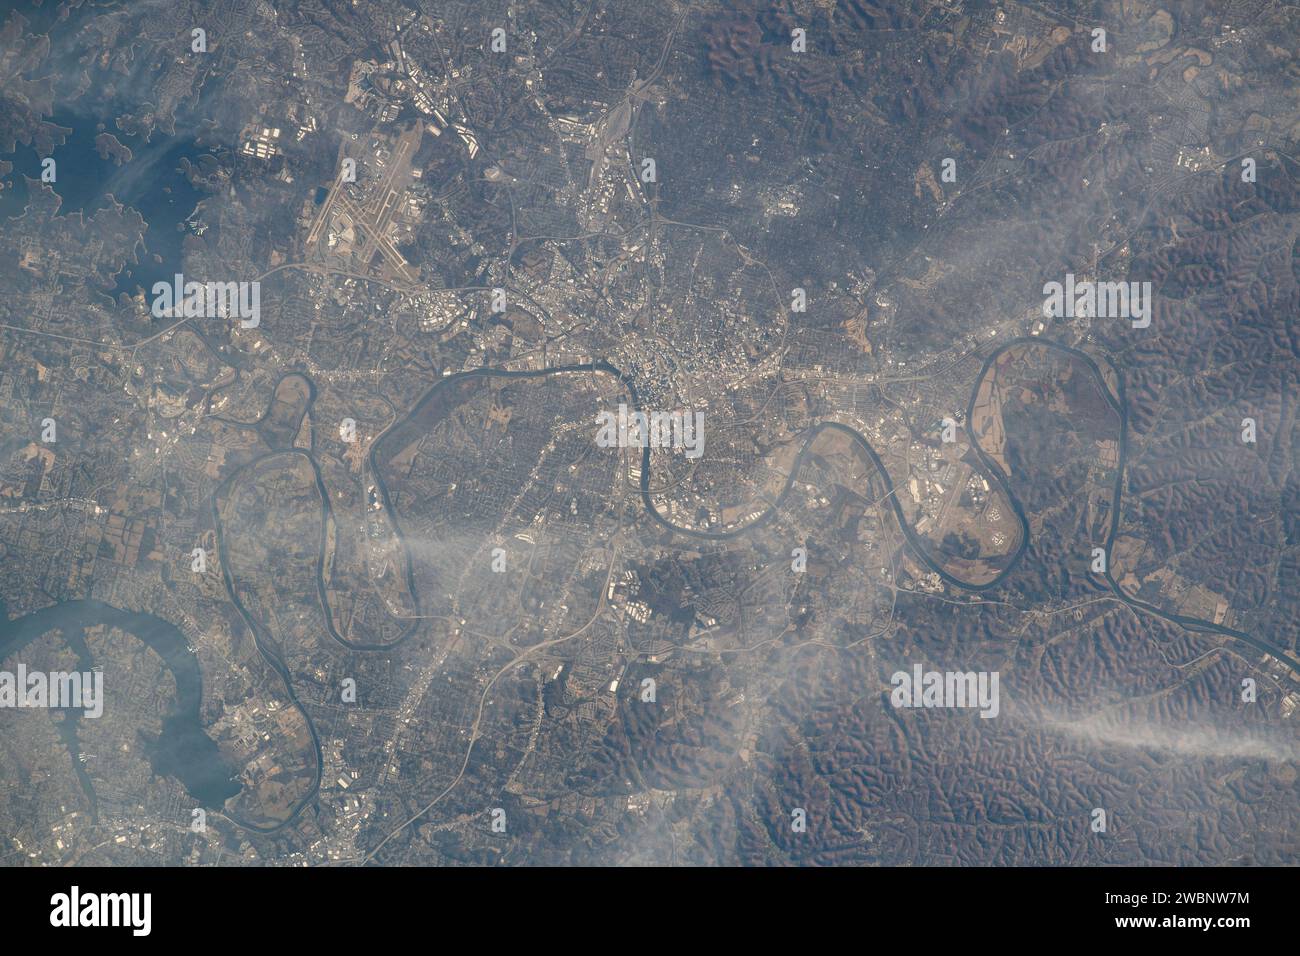 Iss070e031247 (25. November 2023) --- Nashville, Tennessee, geteilt durch den Cumberland River, wird von der Internationalen Raumstation aus aufgenommen, als sie 261 Meilen über dem Volunteer State umkreiste. Links oben befindet sich der Nashville International Airport in der Nähe des Percy Priest Lake. Stockfoto